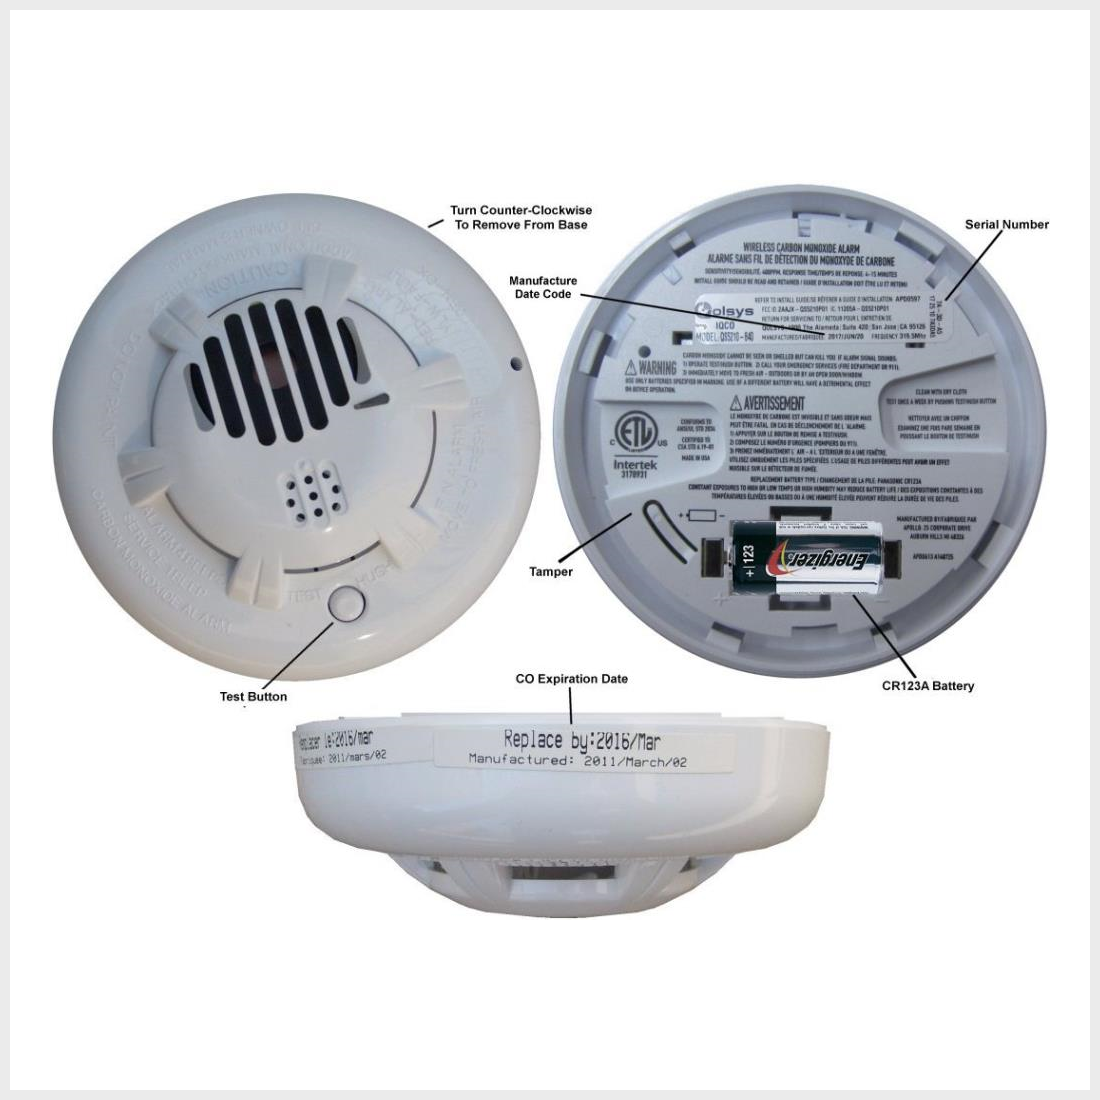 Where should I install a carbon monoxide detector?